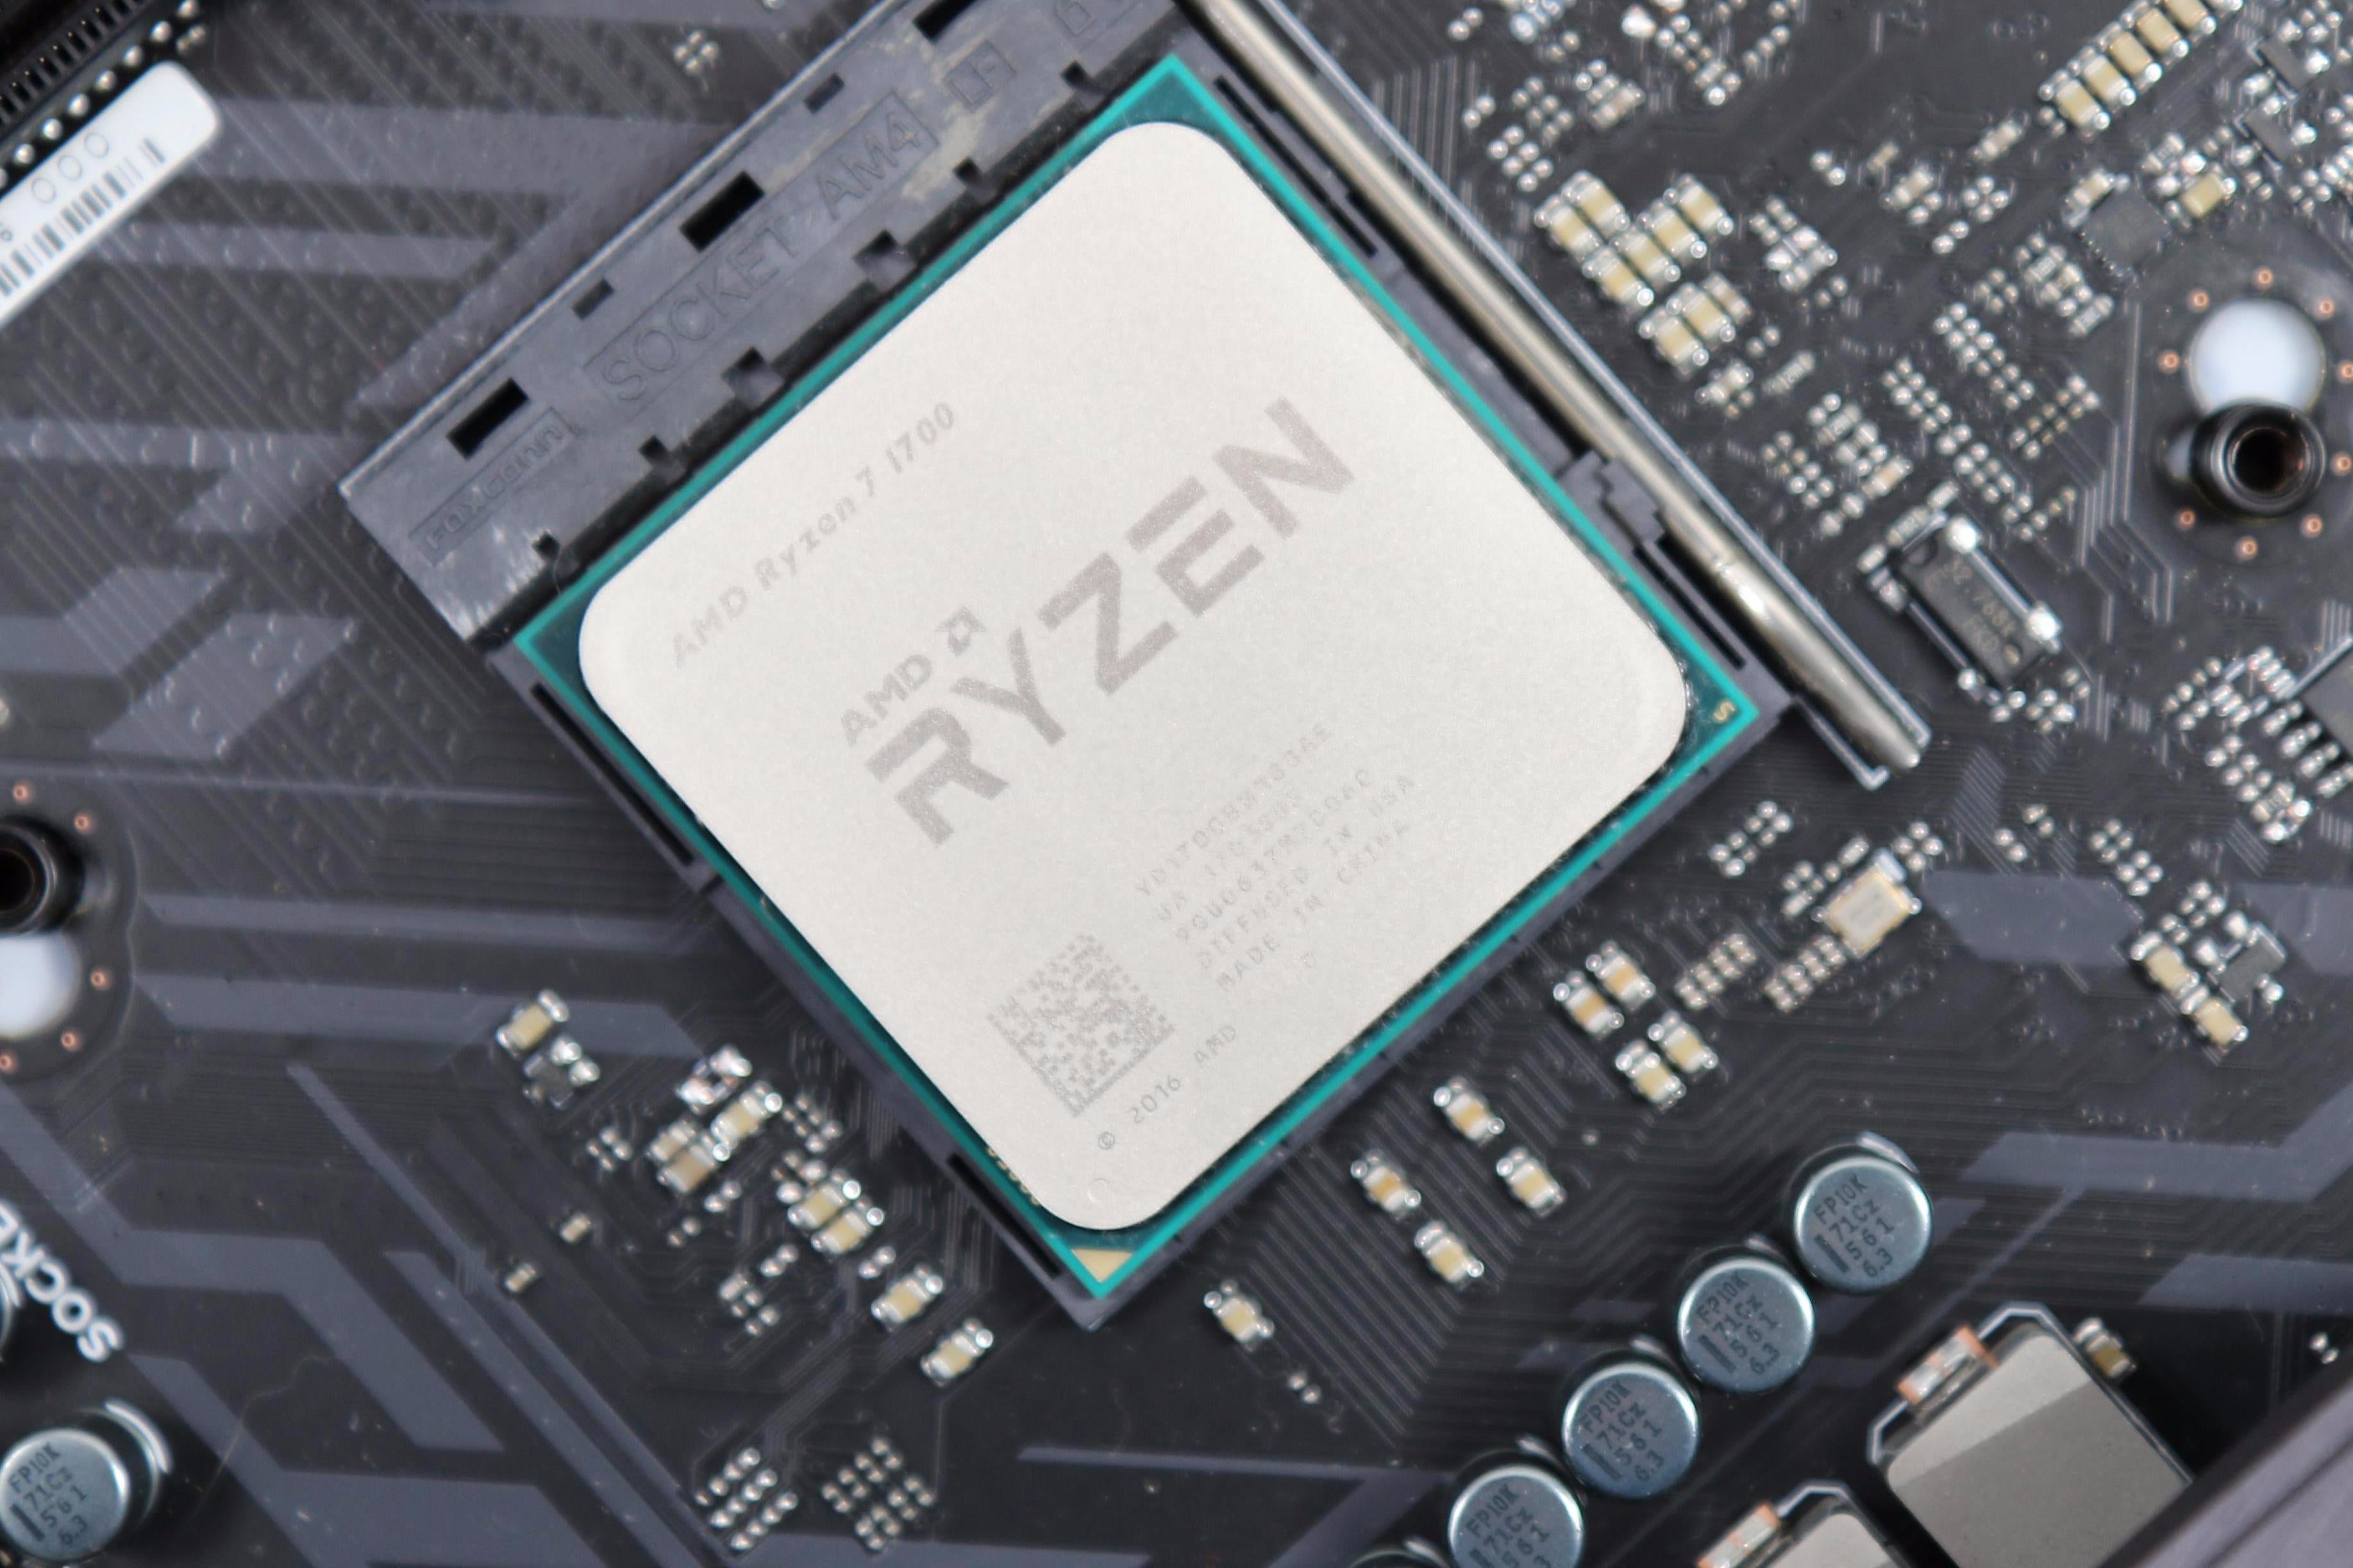 Ryzen 7 1700 and 1700X review: better than the 1800X? | Eurogamer.net